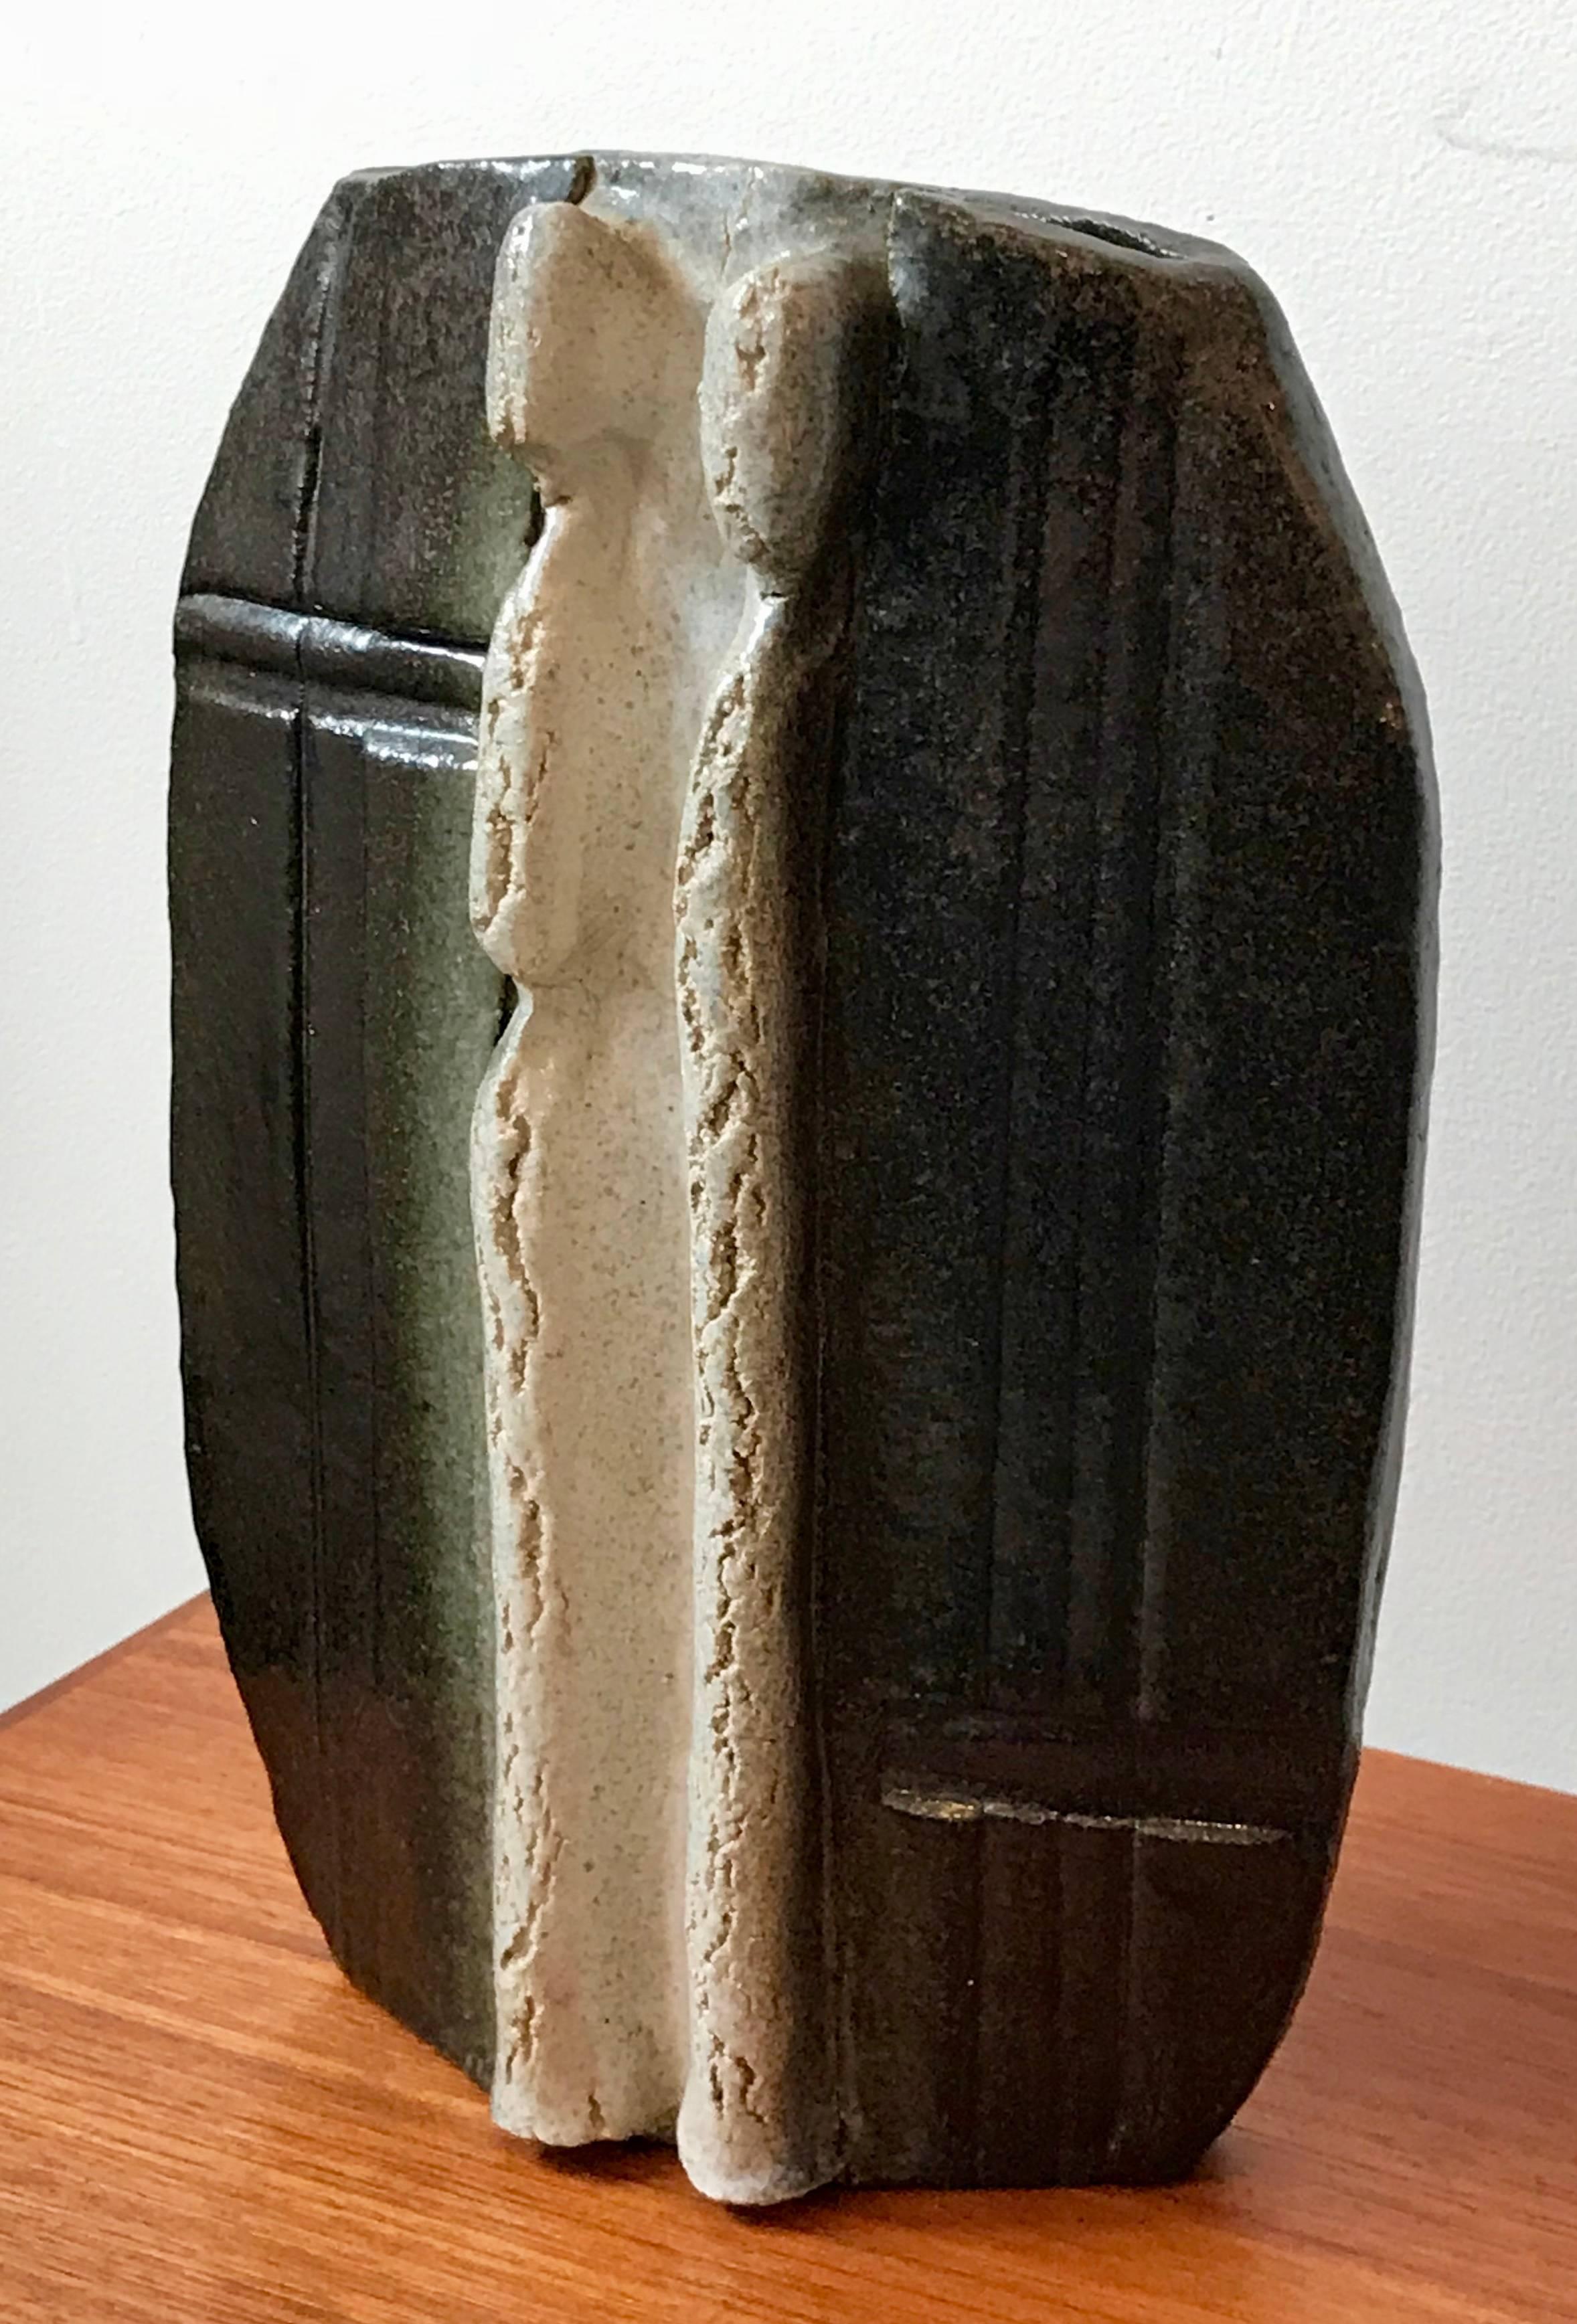 Très beau vase sculptural à glaçure métallique du milieu du siècle avec des figures masculines et féminines en saillie. Artiste inconnu.